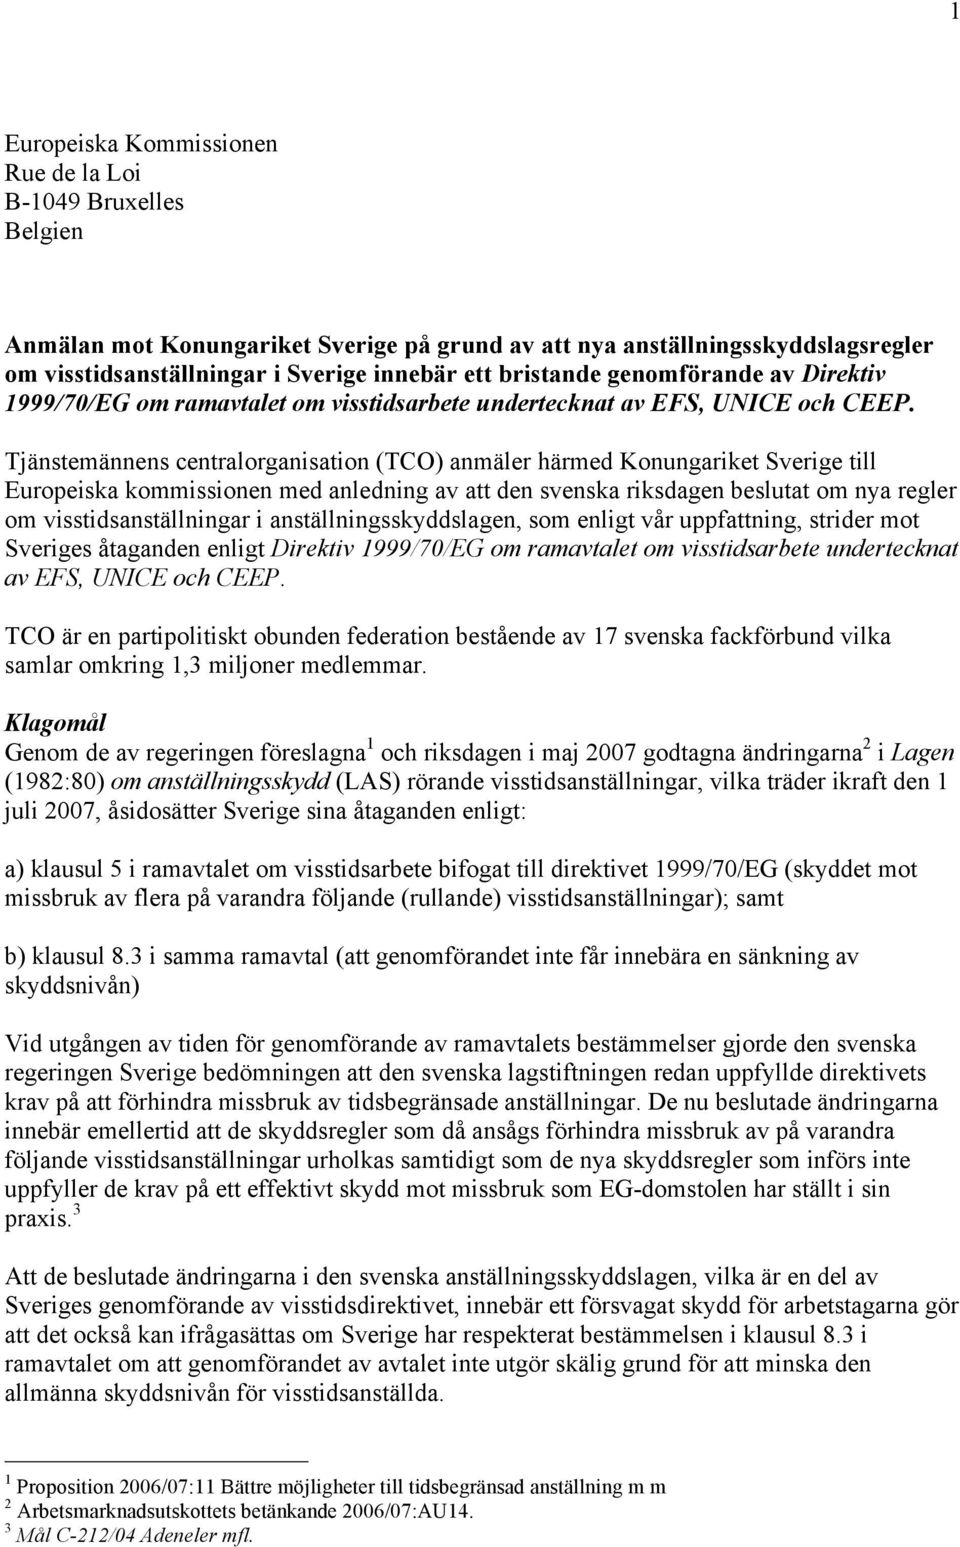 Tjänstemännens centralorganisation (TCO) anmäler härmed Konungariket Sverige till Europeiska kommissionen med anledning av att den svenska riksdagen beslutat om nya regler om visstidsanställningar i